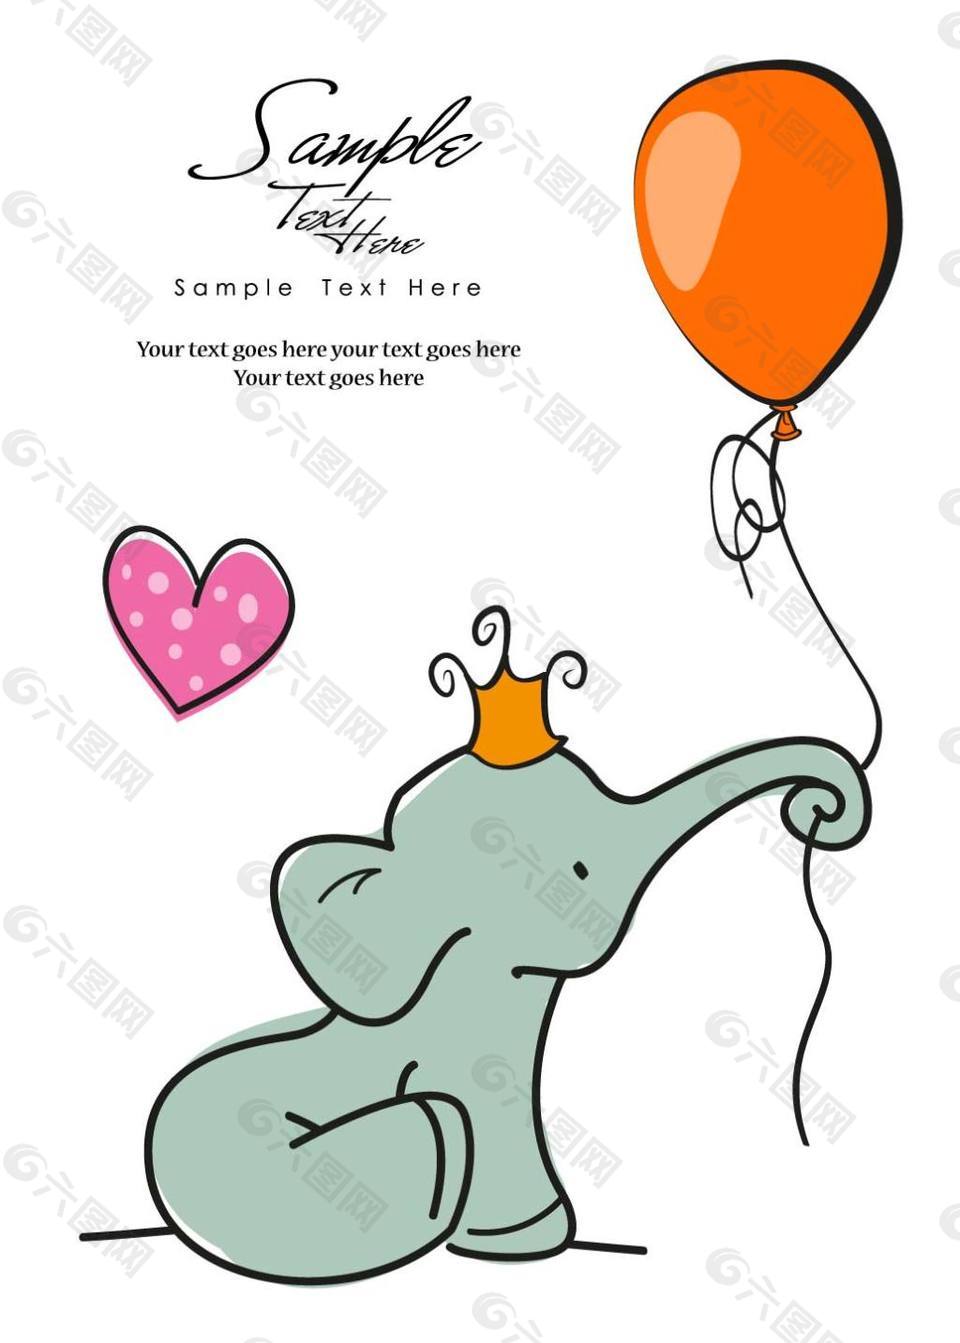 卡通大象与气球插画矢量素材下载